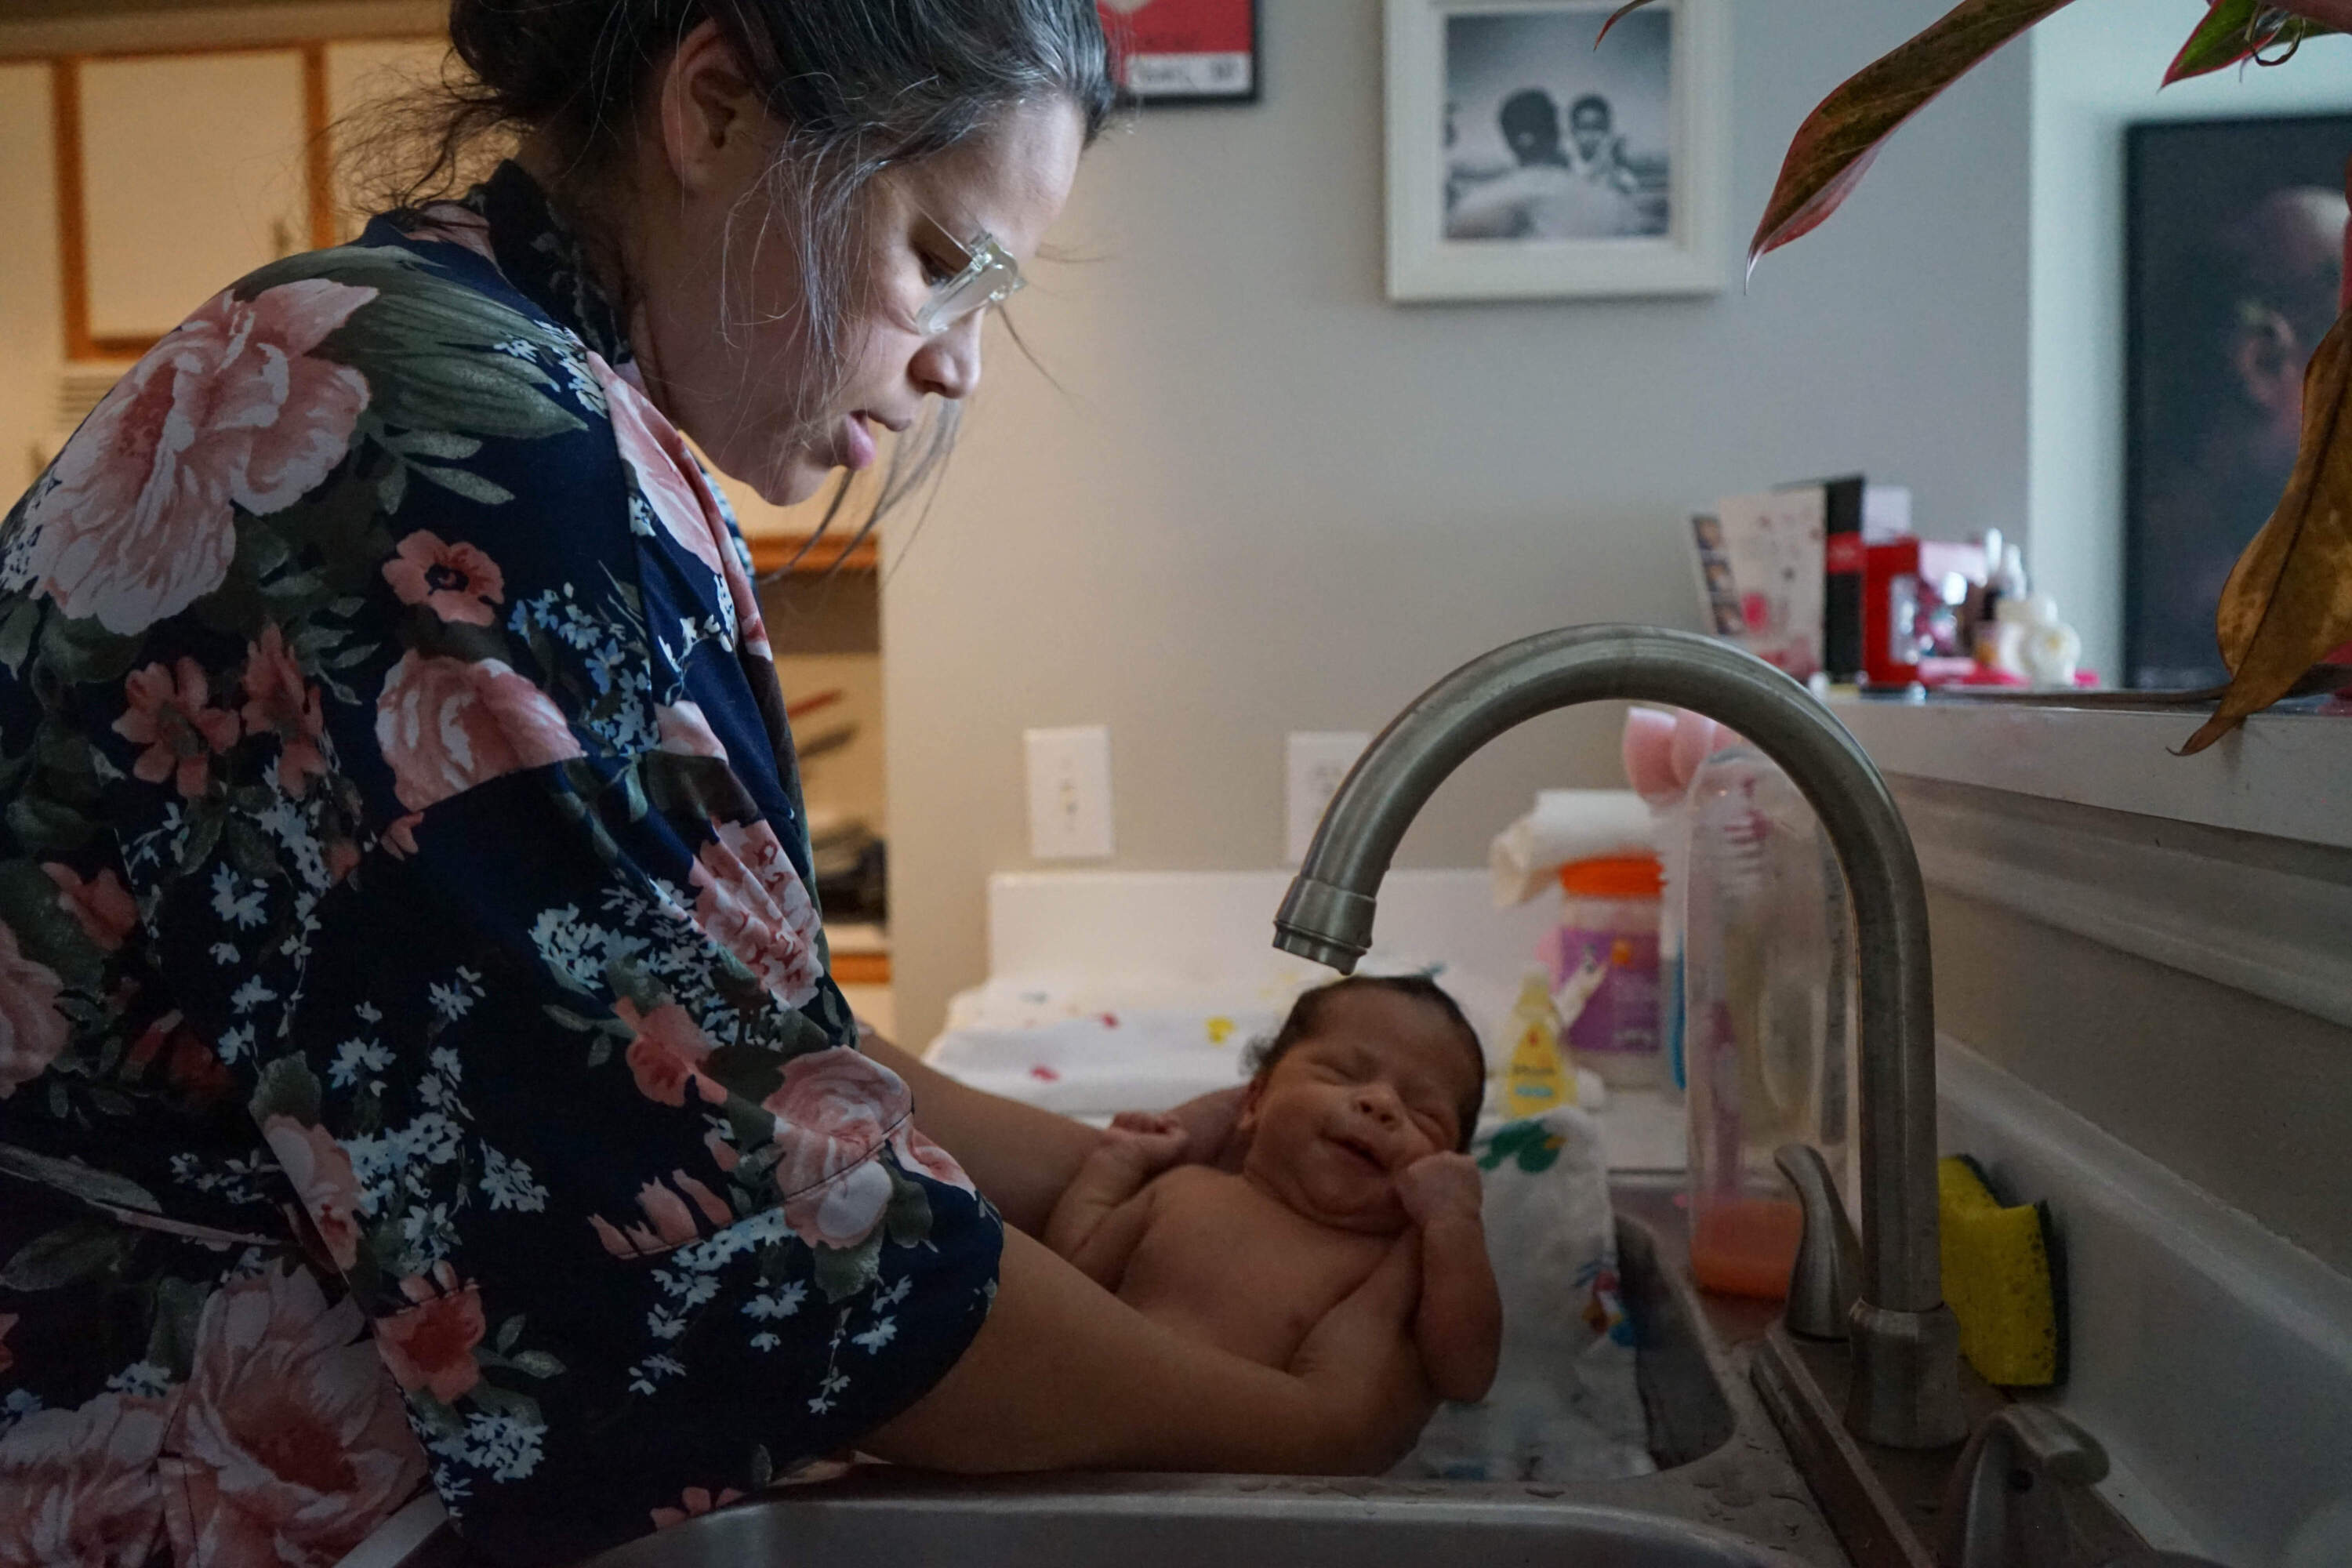 Catherina Lawson bathes her infant Avella Lawson in the kitchen sink. (Courtesy Stefanie D. Belnavis/Birthlooms)